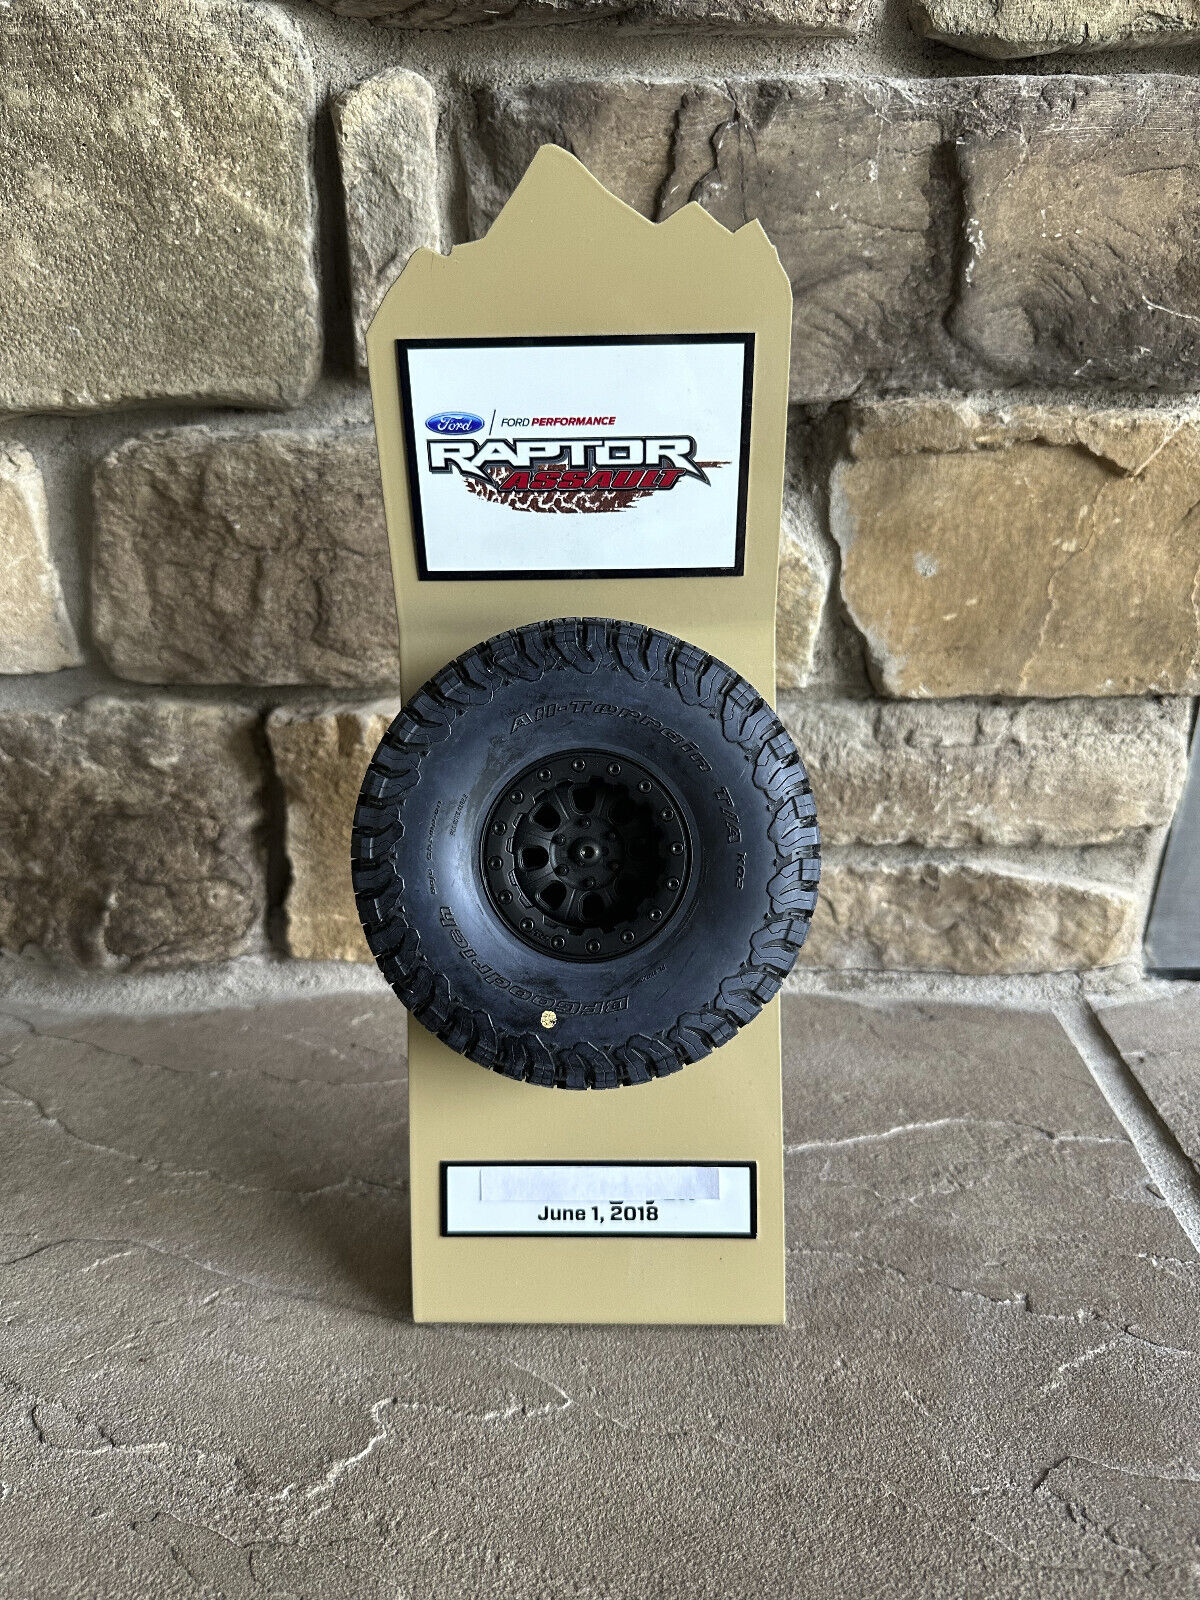 Ford Performance Raptor Assault Racing School Trophy Plaque